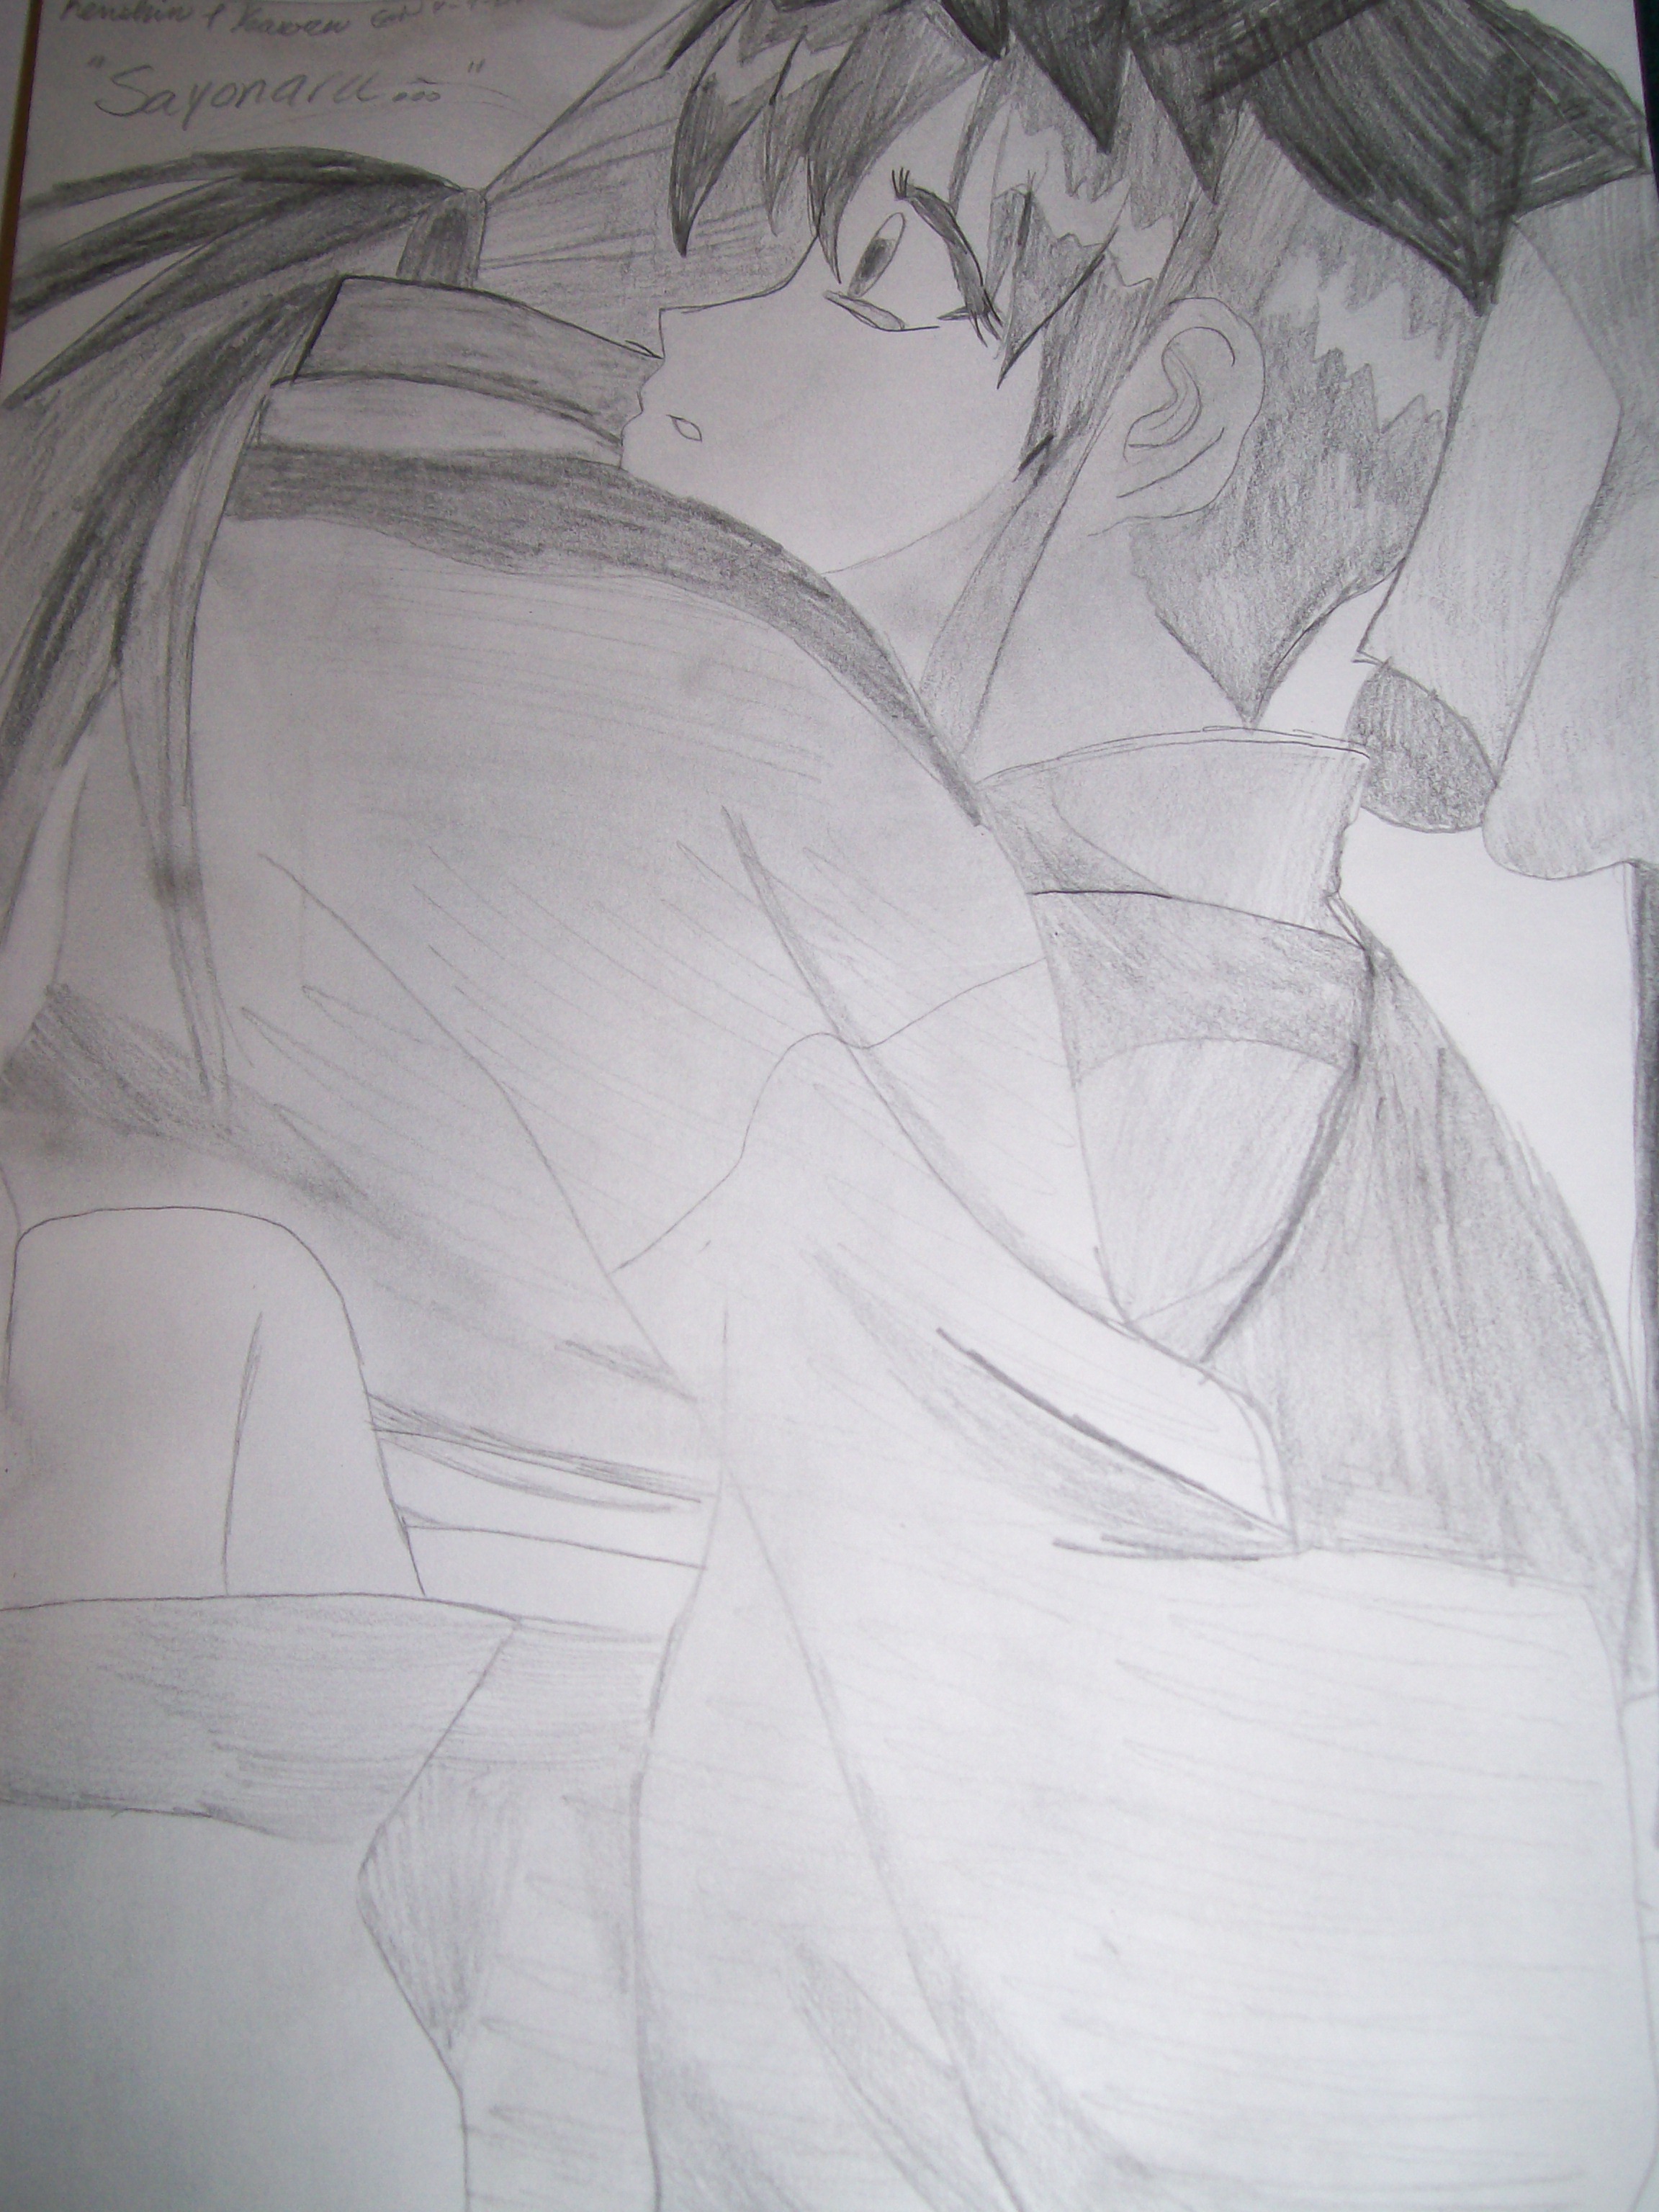 Kenshin and Kaoru by Sasuke_Uchiha1121